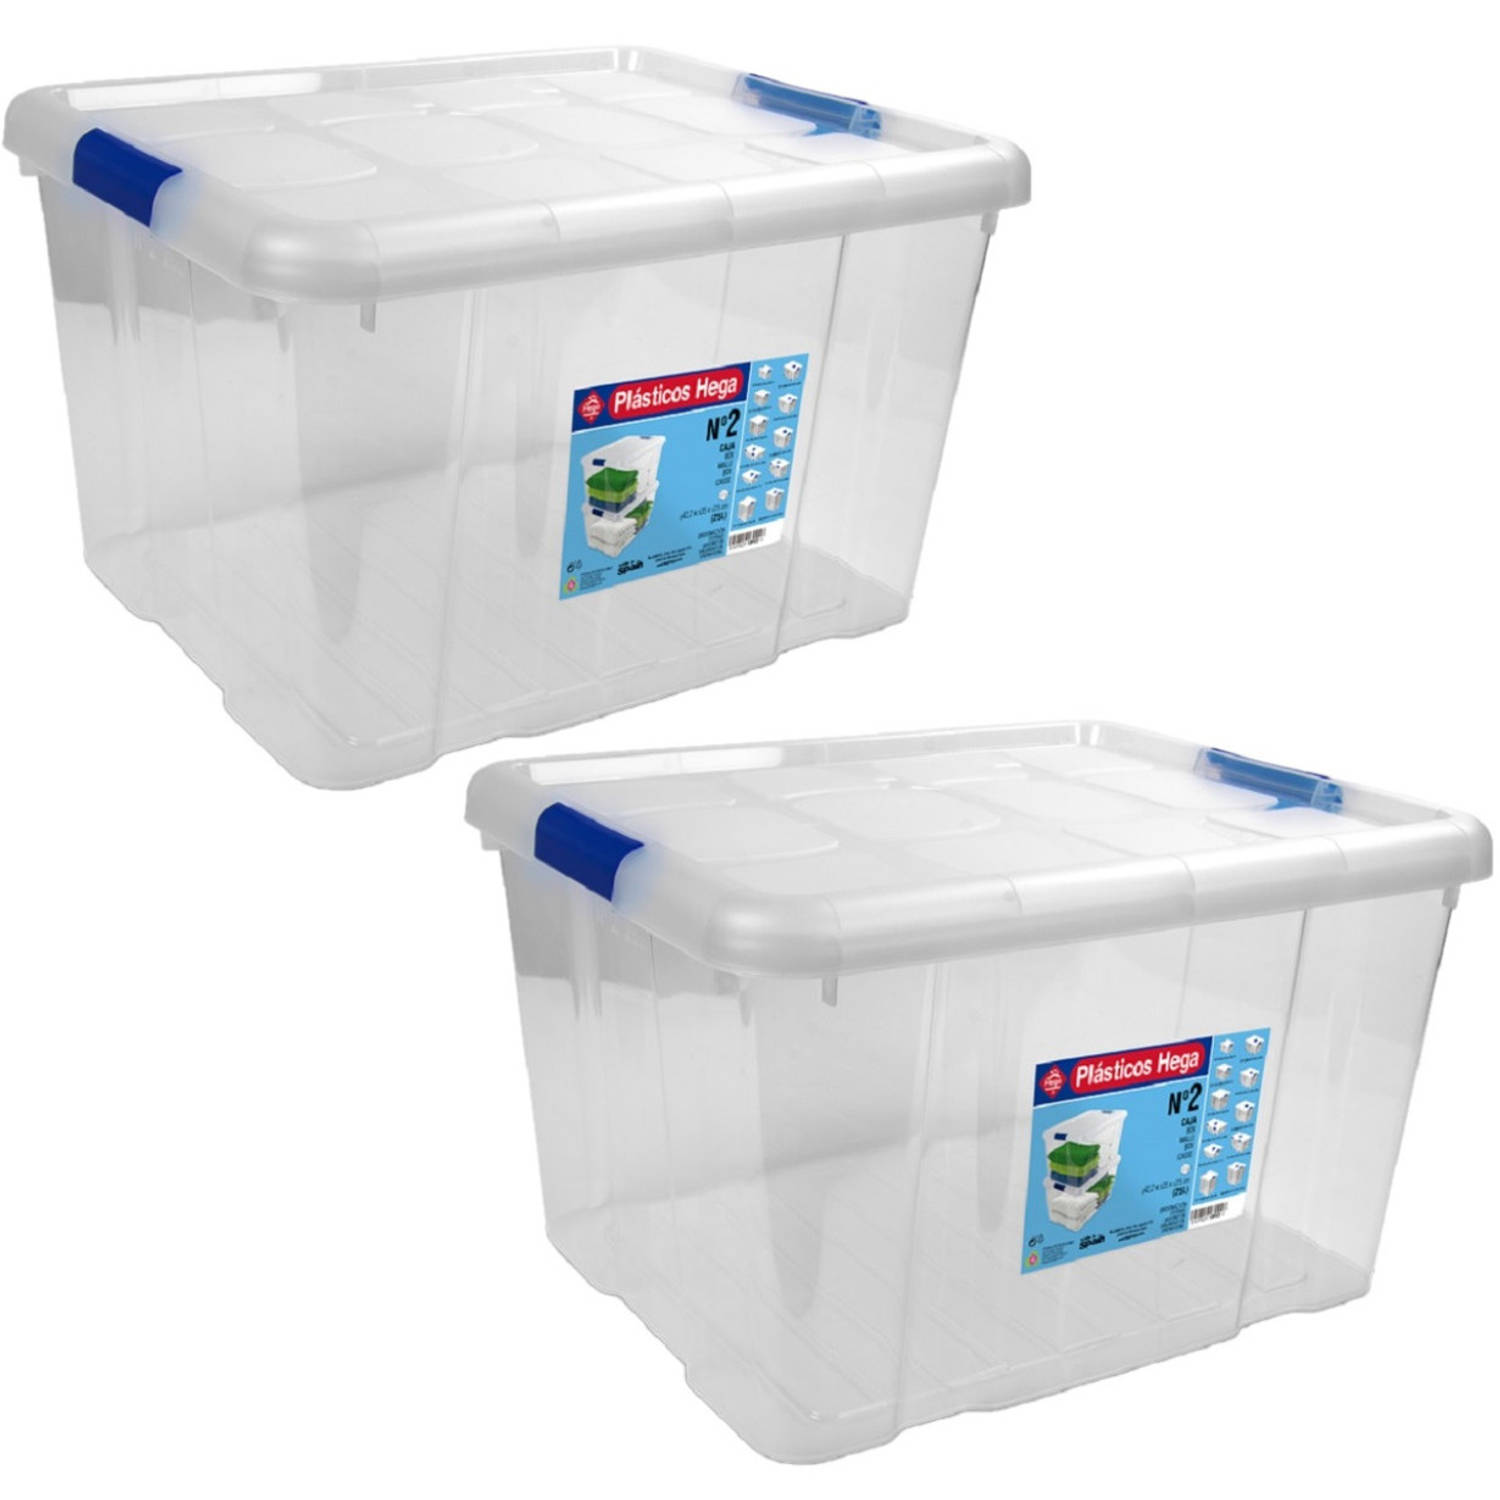 2x Opbergboxen/opbergdozen met deksel 25 liter kunststof transparant/blauw - Opbergbox